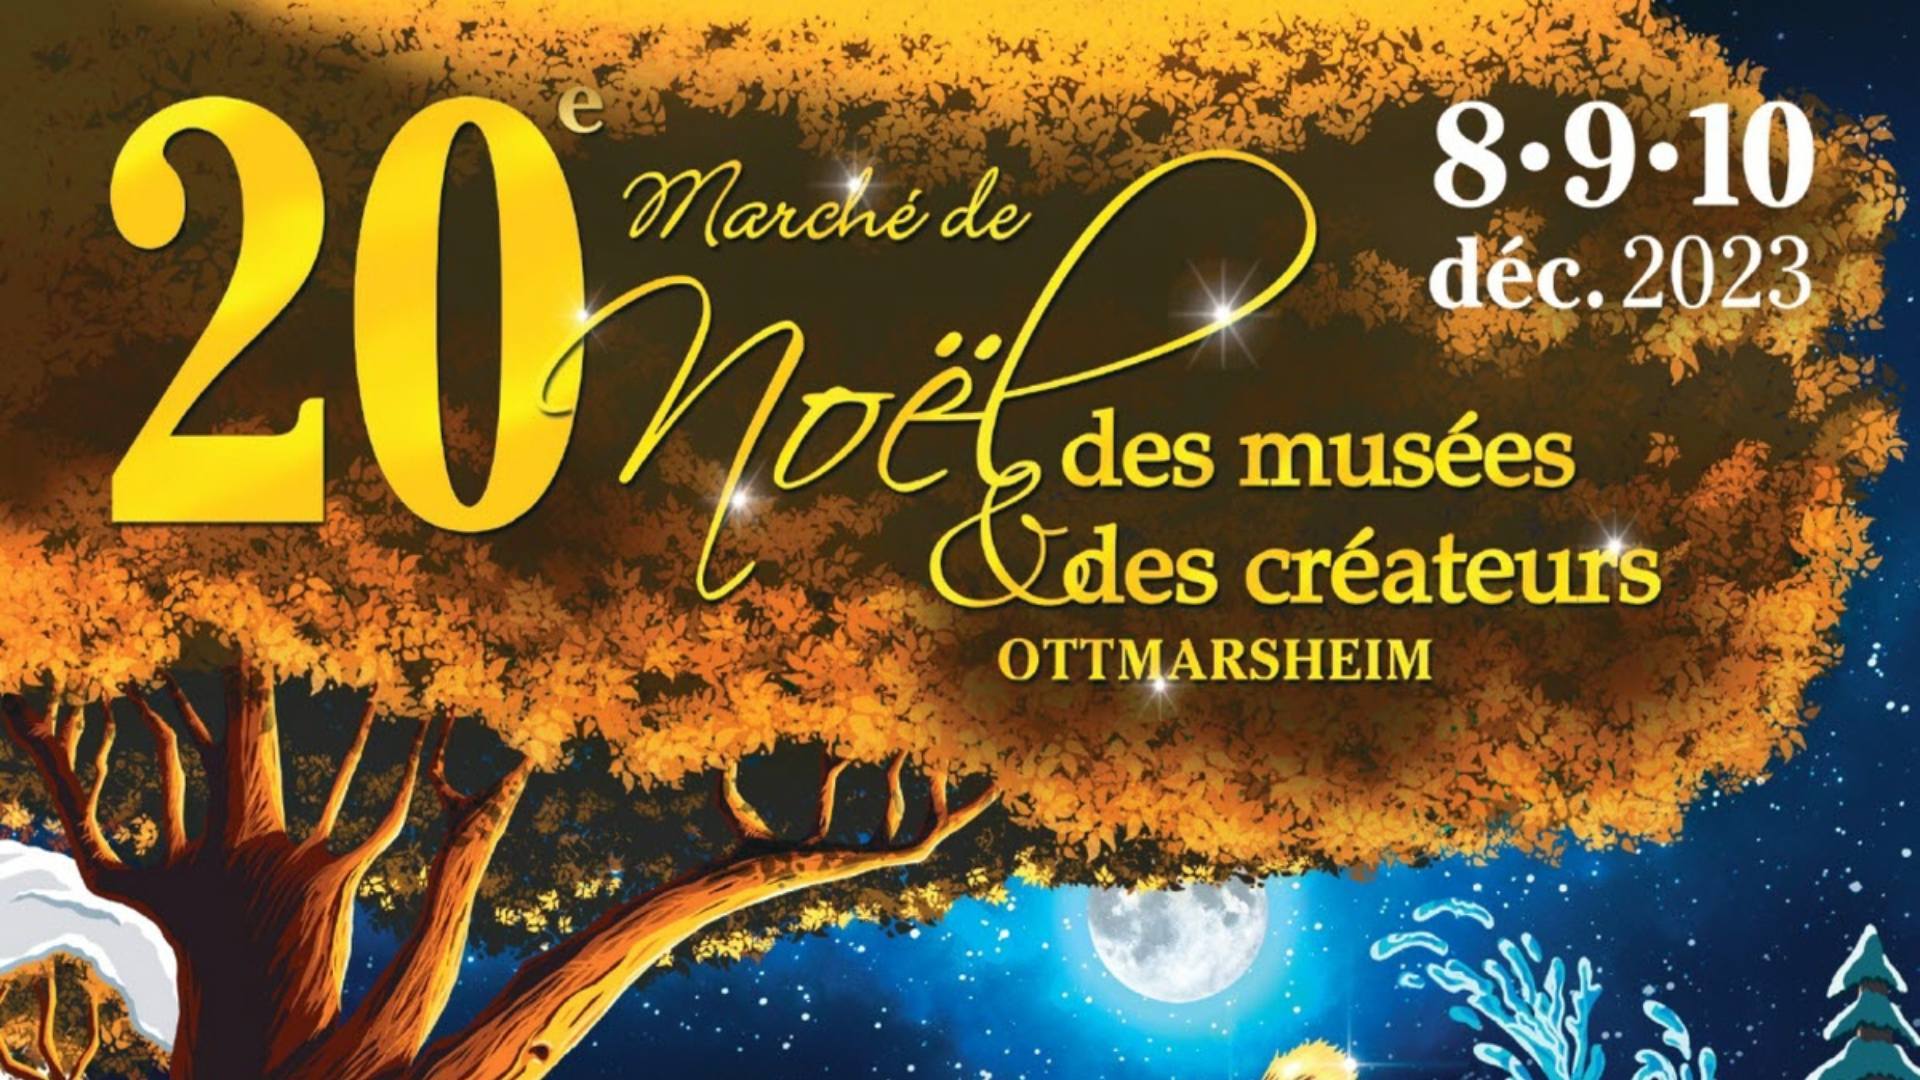 Marché de Noël des musées et des créateurs à Ottmarsheim